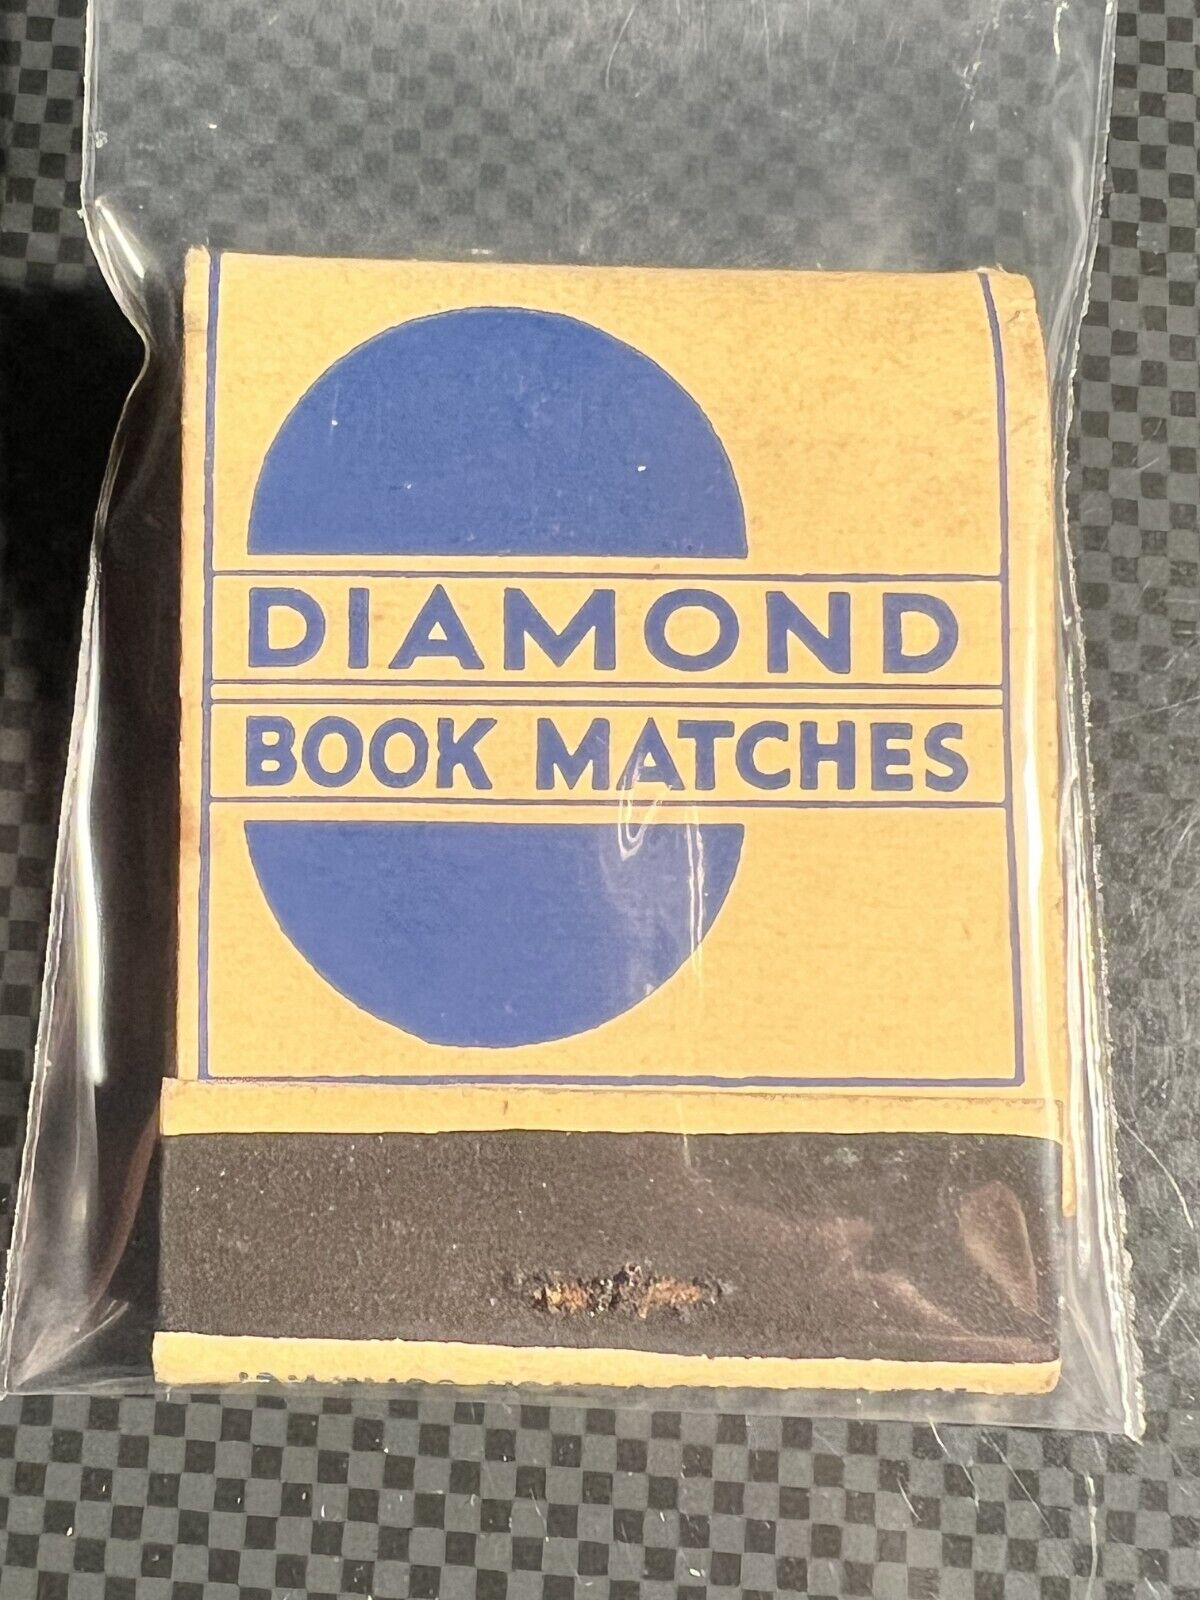 MATCHBOOK - DIAMOND BOOK MATCHES - DIAMOND MATCHES - U.S.A. - UNSTRUCK